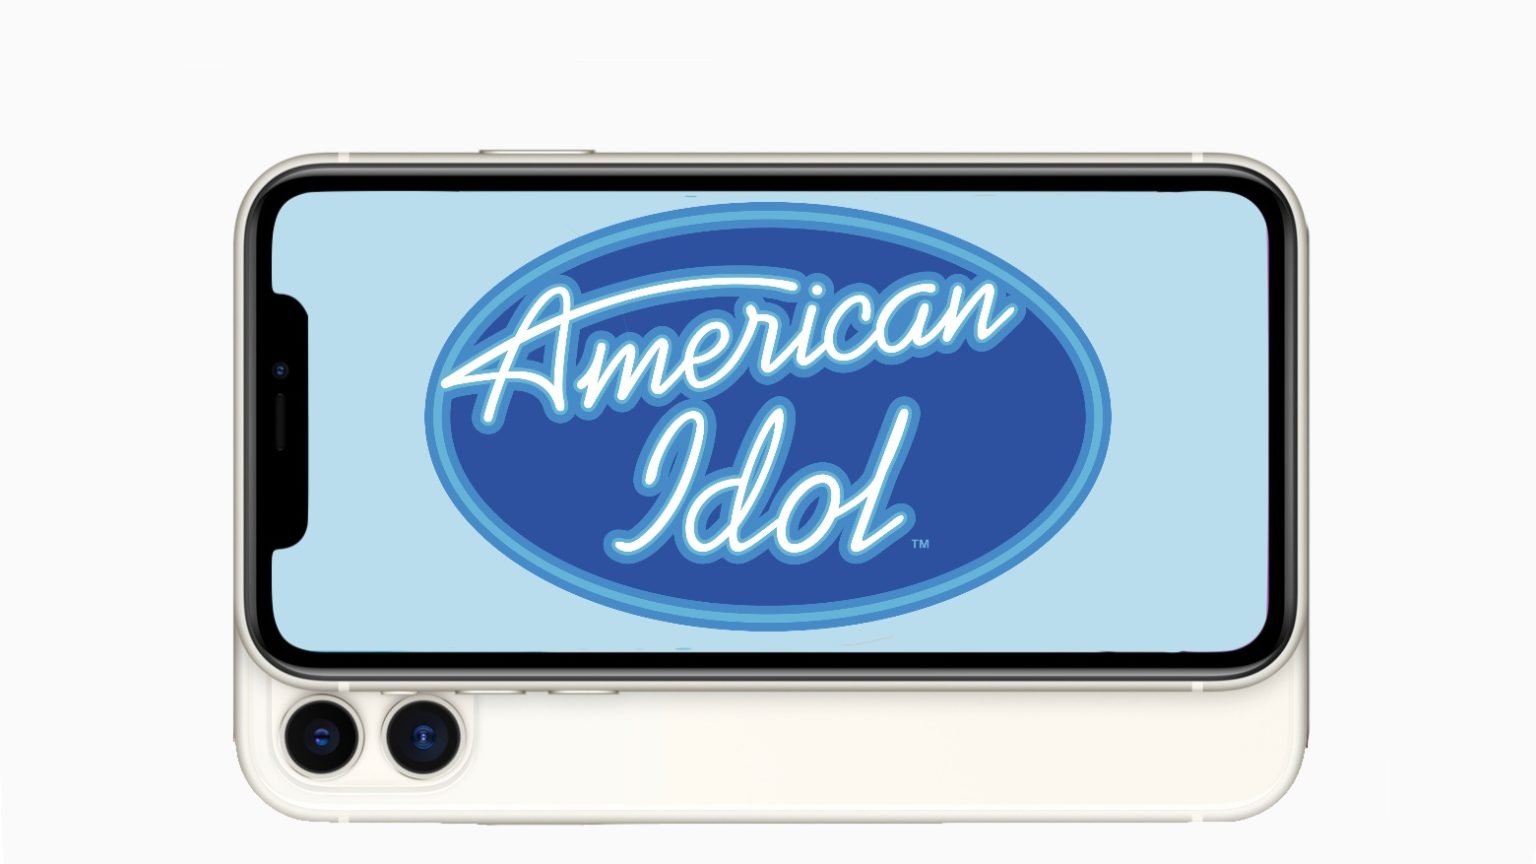 Apple produciría un show original estilo American Idol